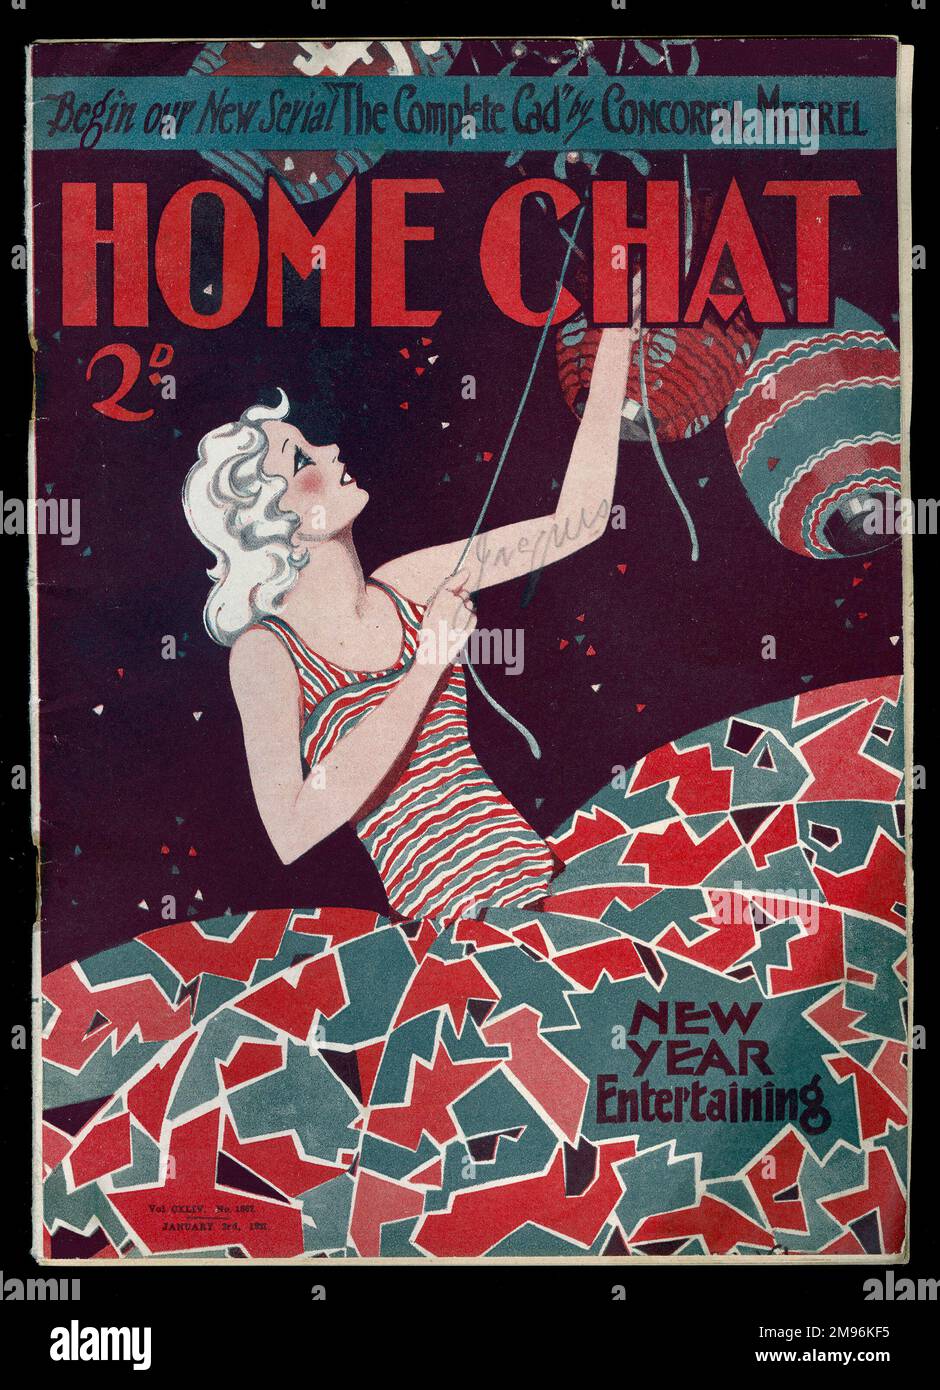 Titelseite des „Home Chat“ Magazins, in dem eine junge Frau Laternen aufstellt, für ein paar Neujahrsunterhaltung. Sie trägt ein rot-blau gemustertes Partykleid. Das Magazin enthält eine neue Serie namens Complete CAD, von Concordia Merrel. Stockfoto